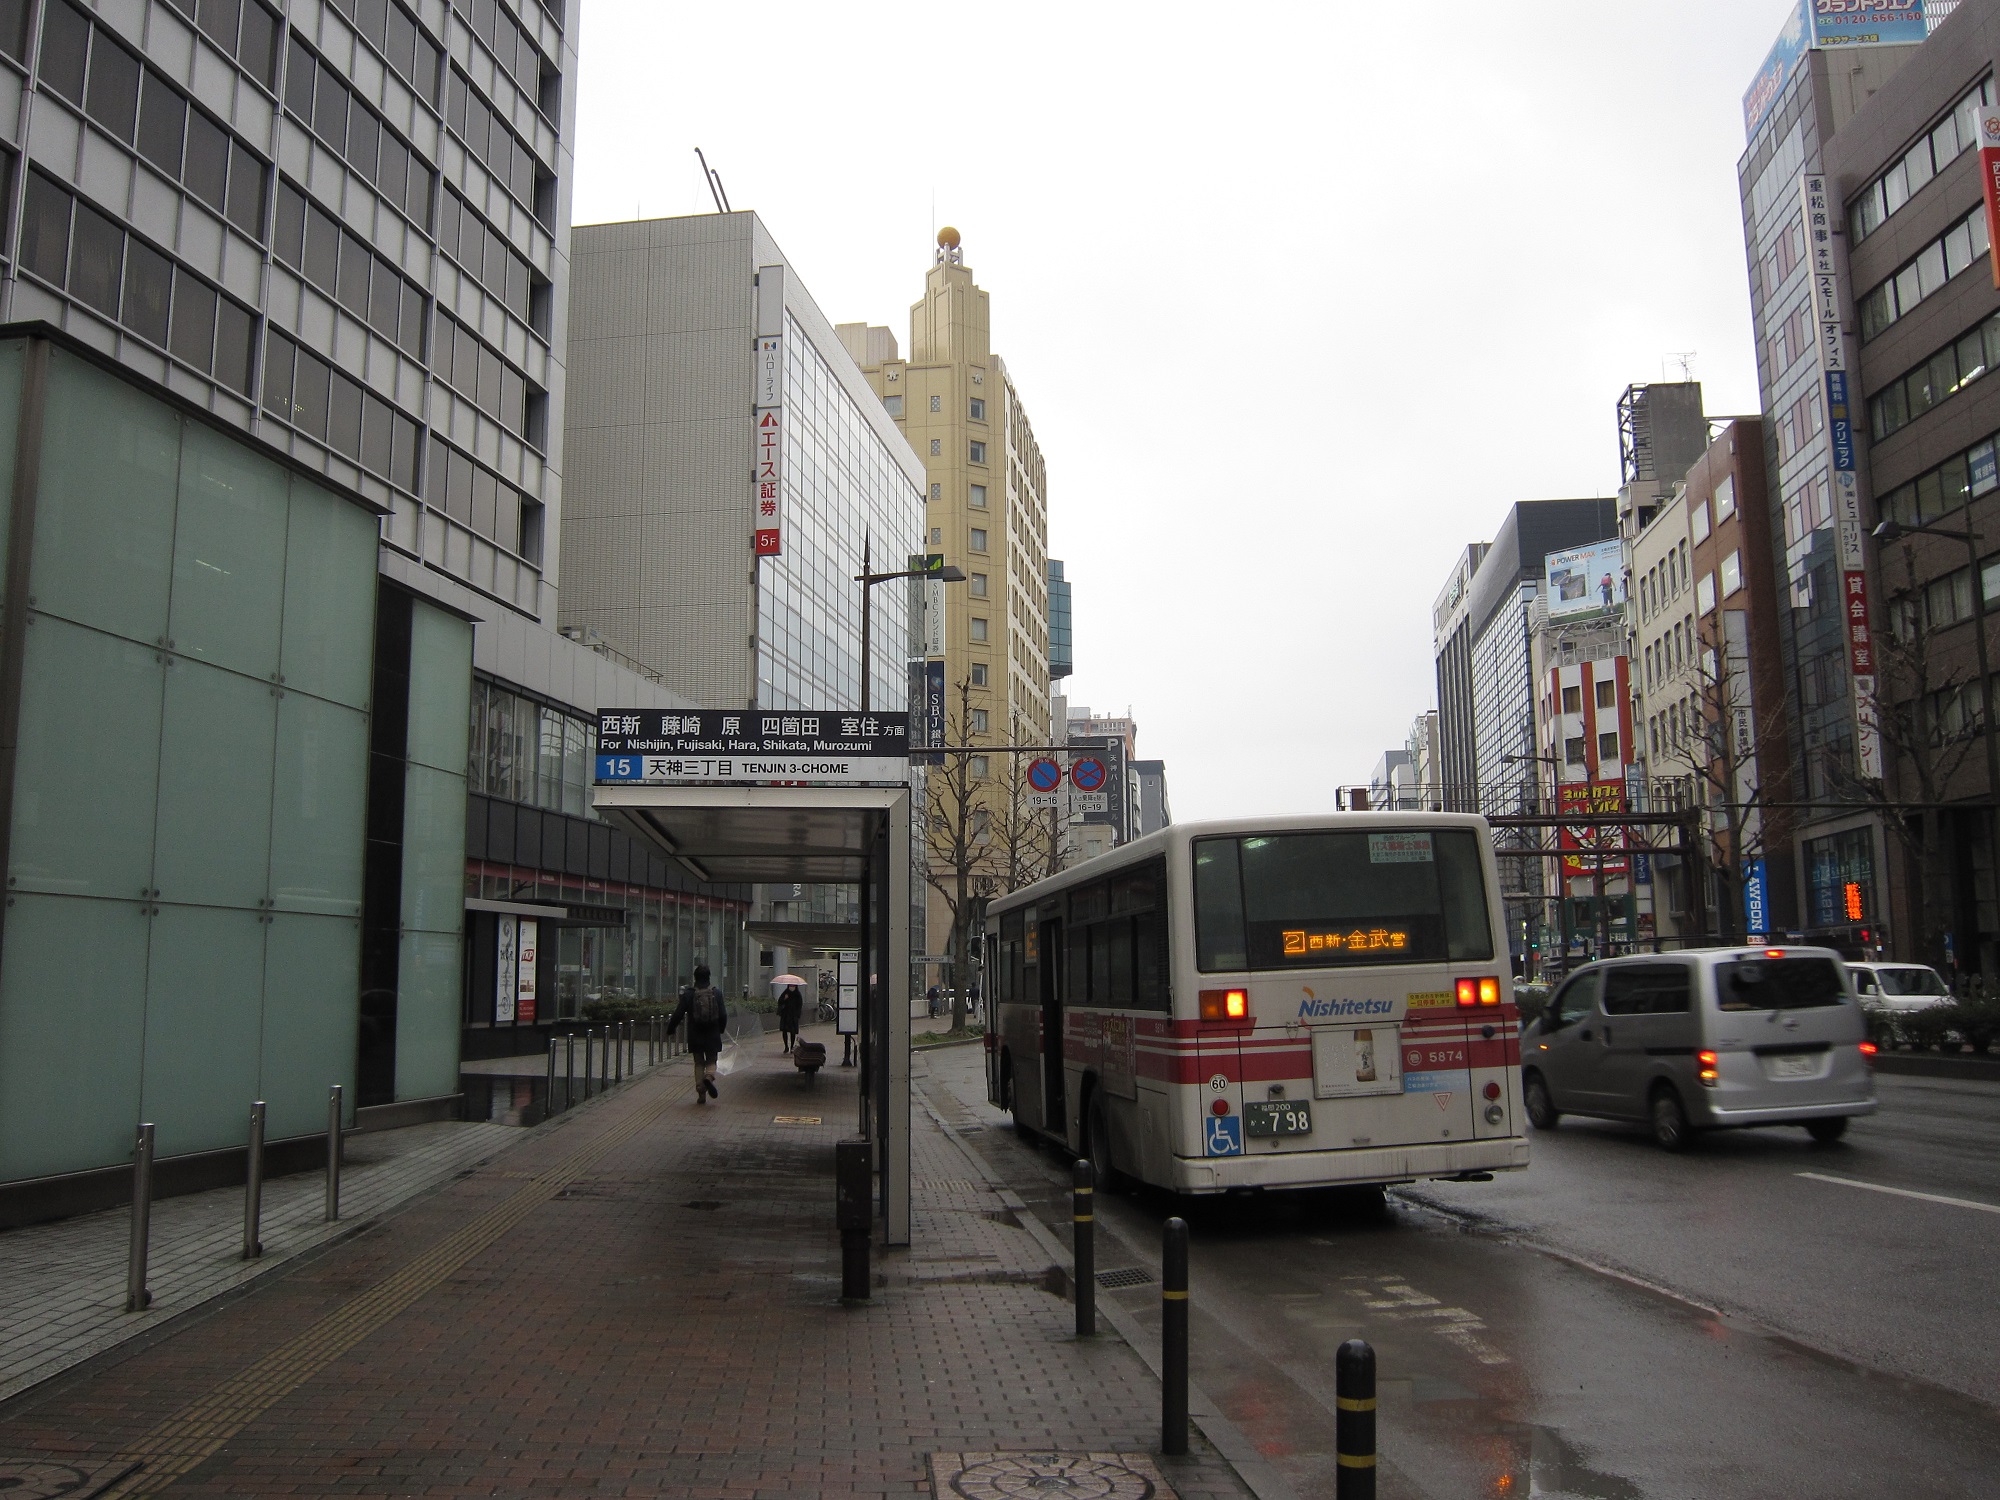 西鉄バス 天神三丁目バス停 ホテルモントレ ラ・スール福岡へはここが一番近い停留所です